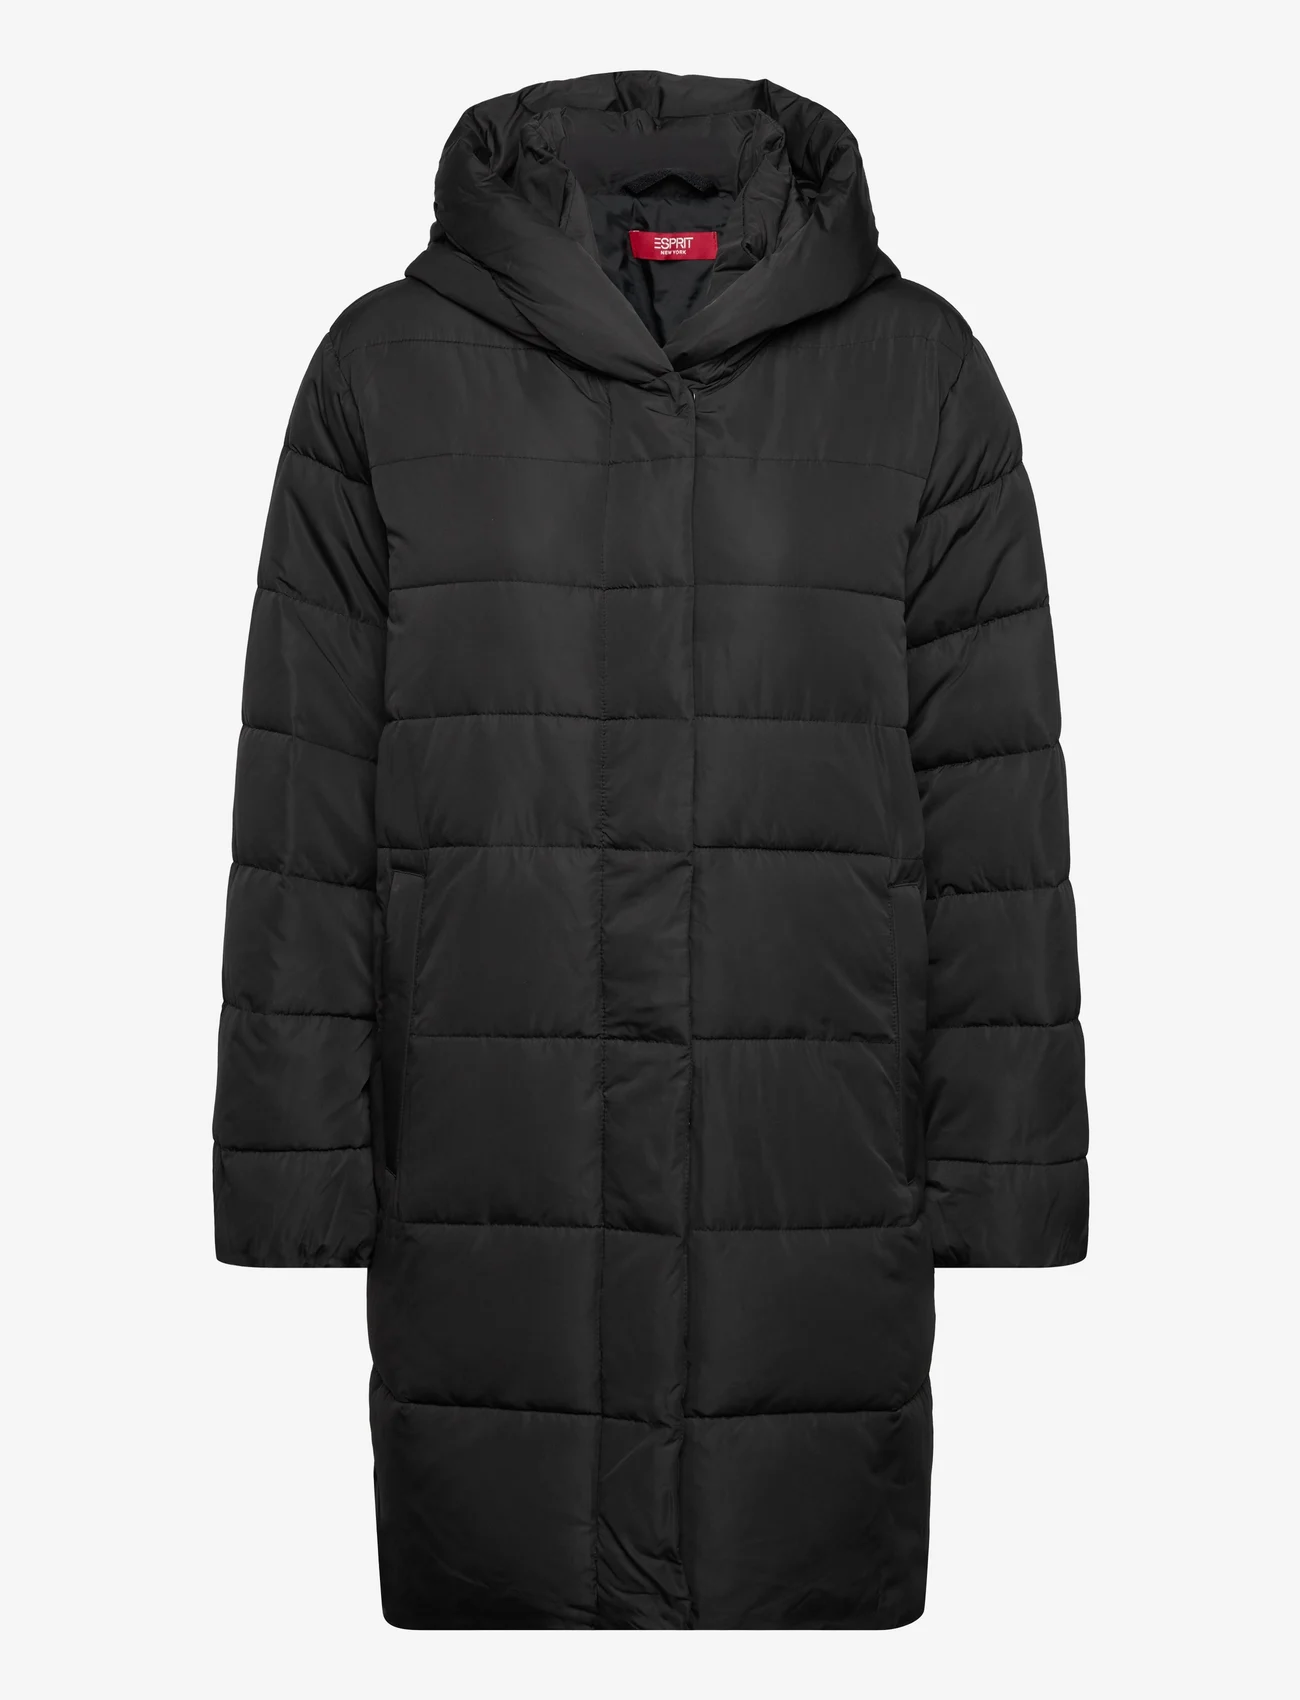 Esprit Collection - Women Coats woven regular - päällystakit - black - 0